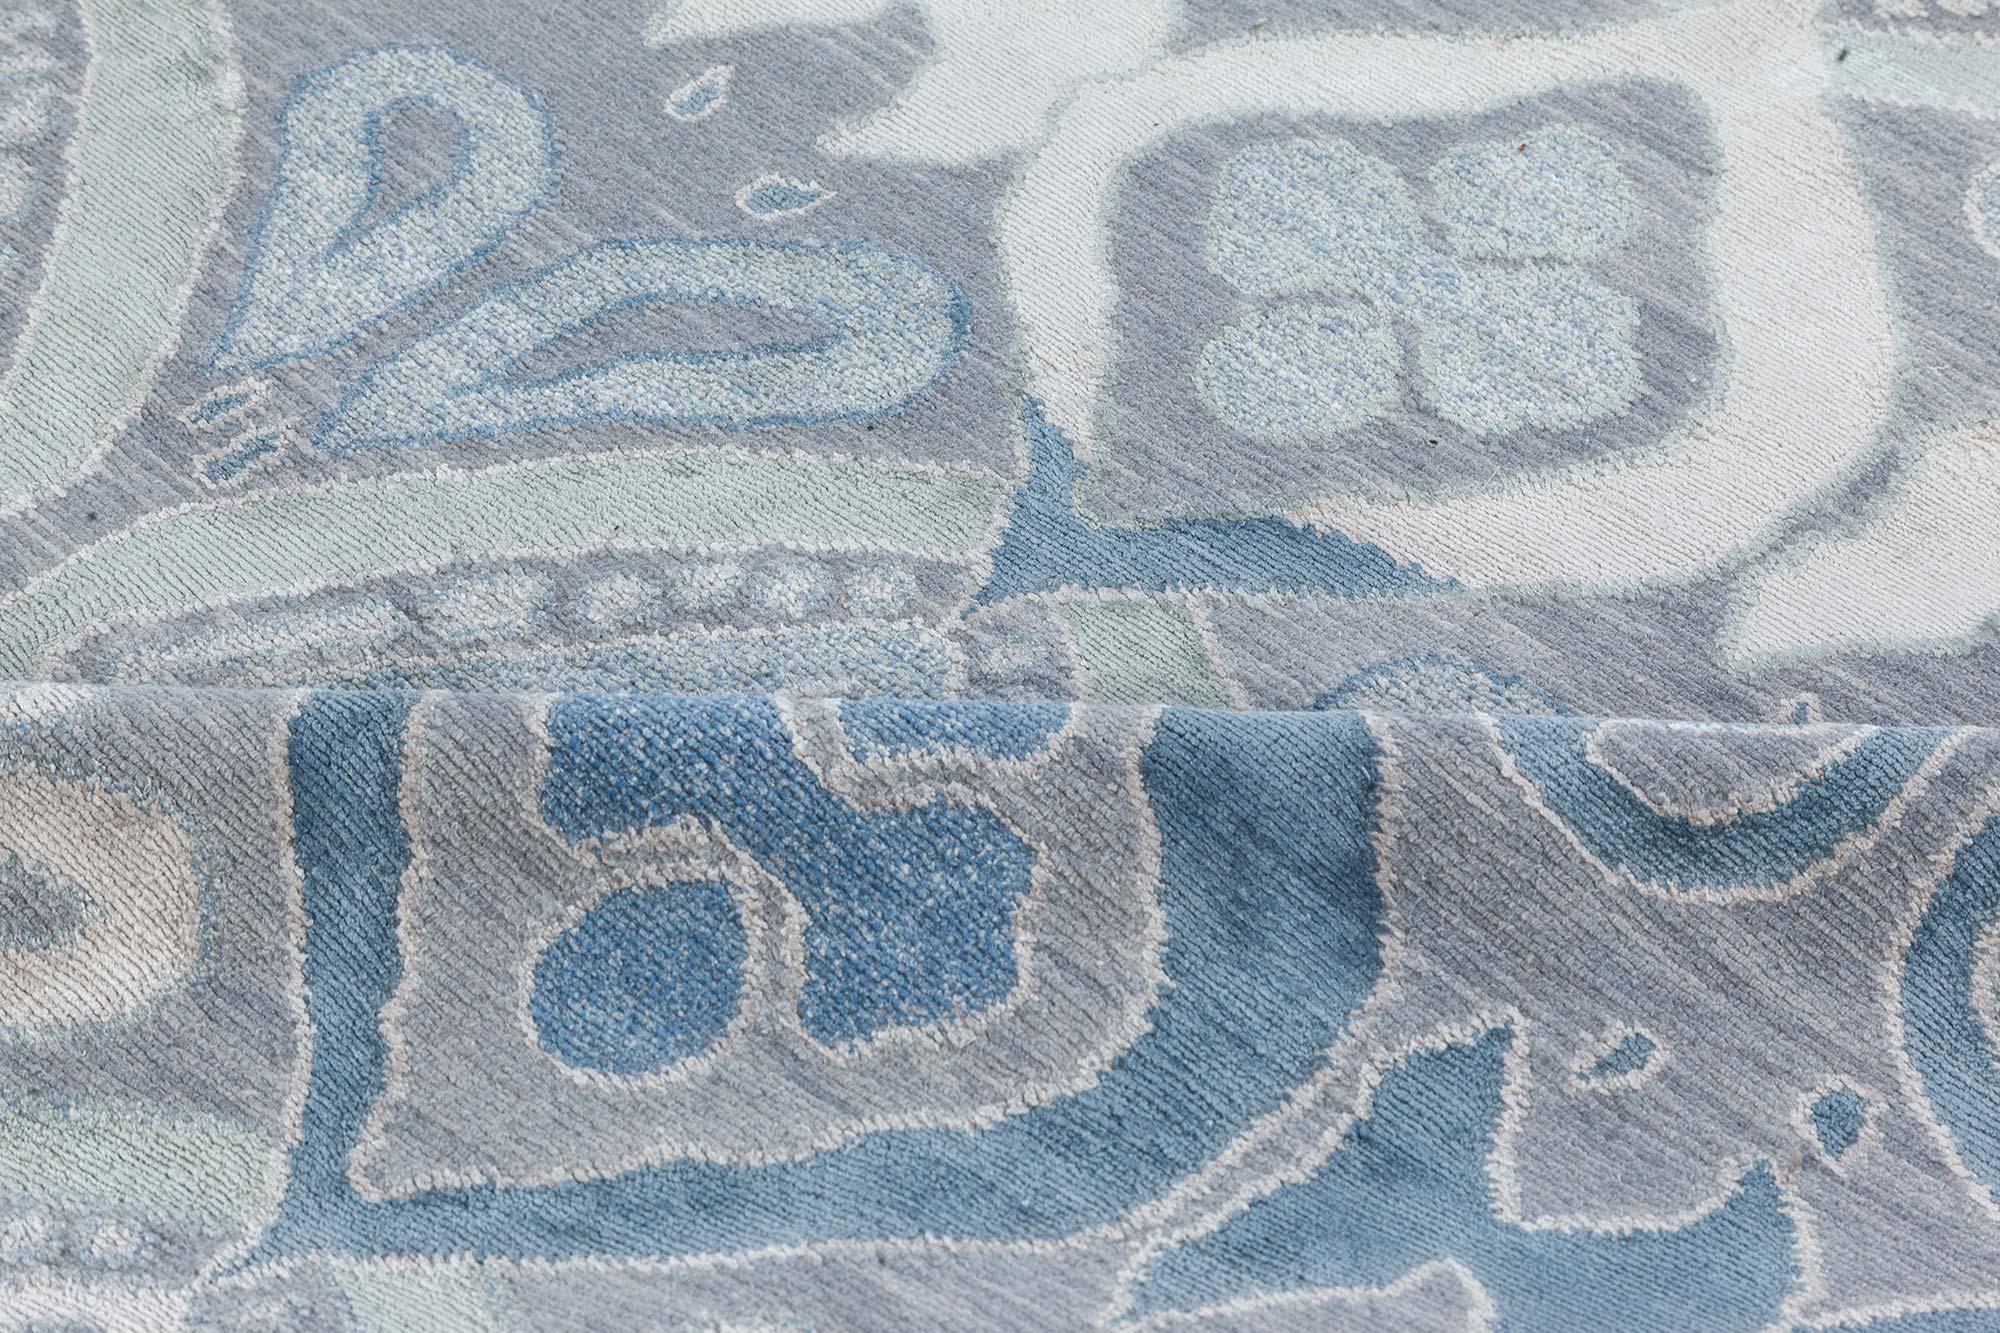 Contemporary blue-grey mandorla rug by Doris Leslie Blau.
Size: 7'10